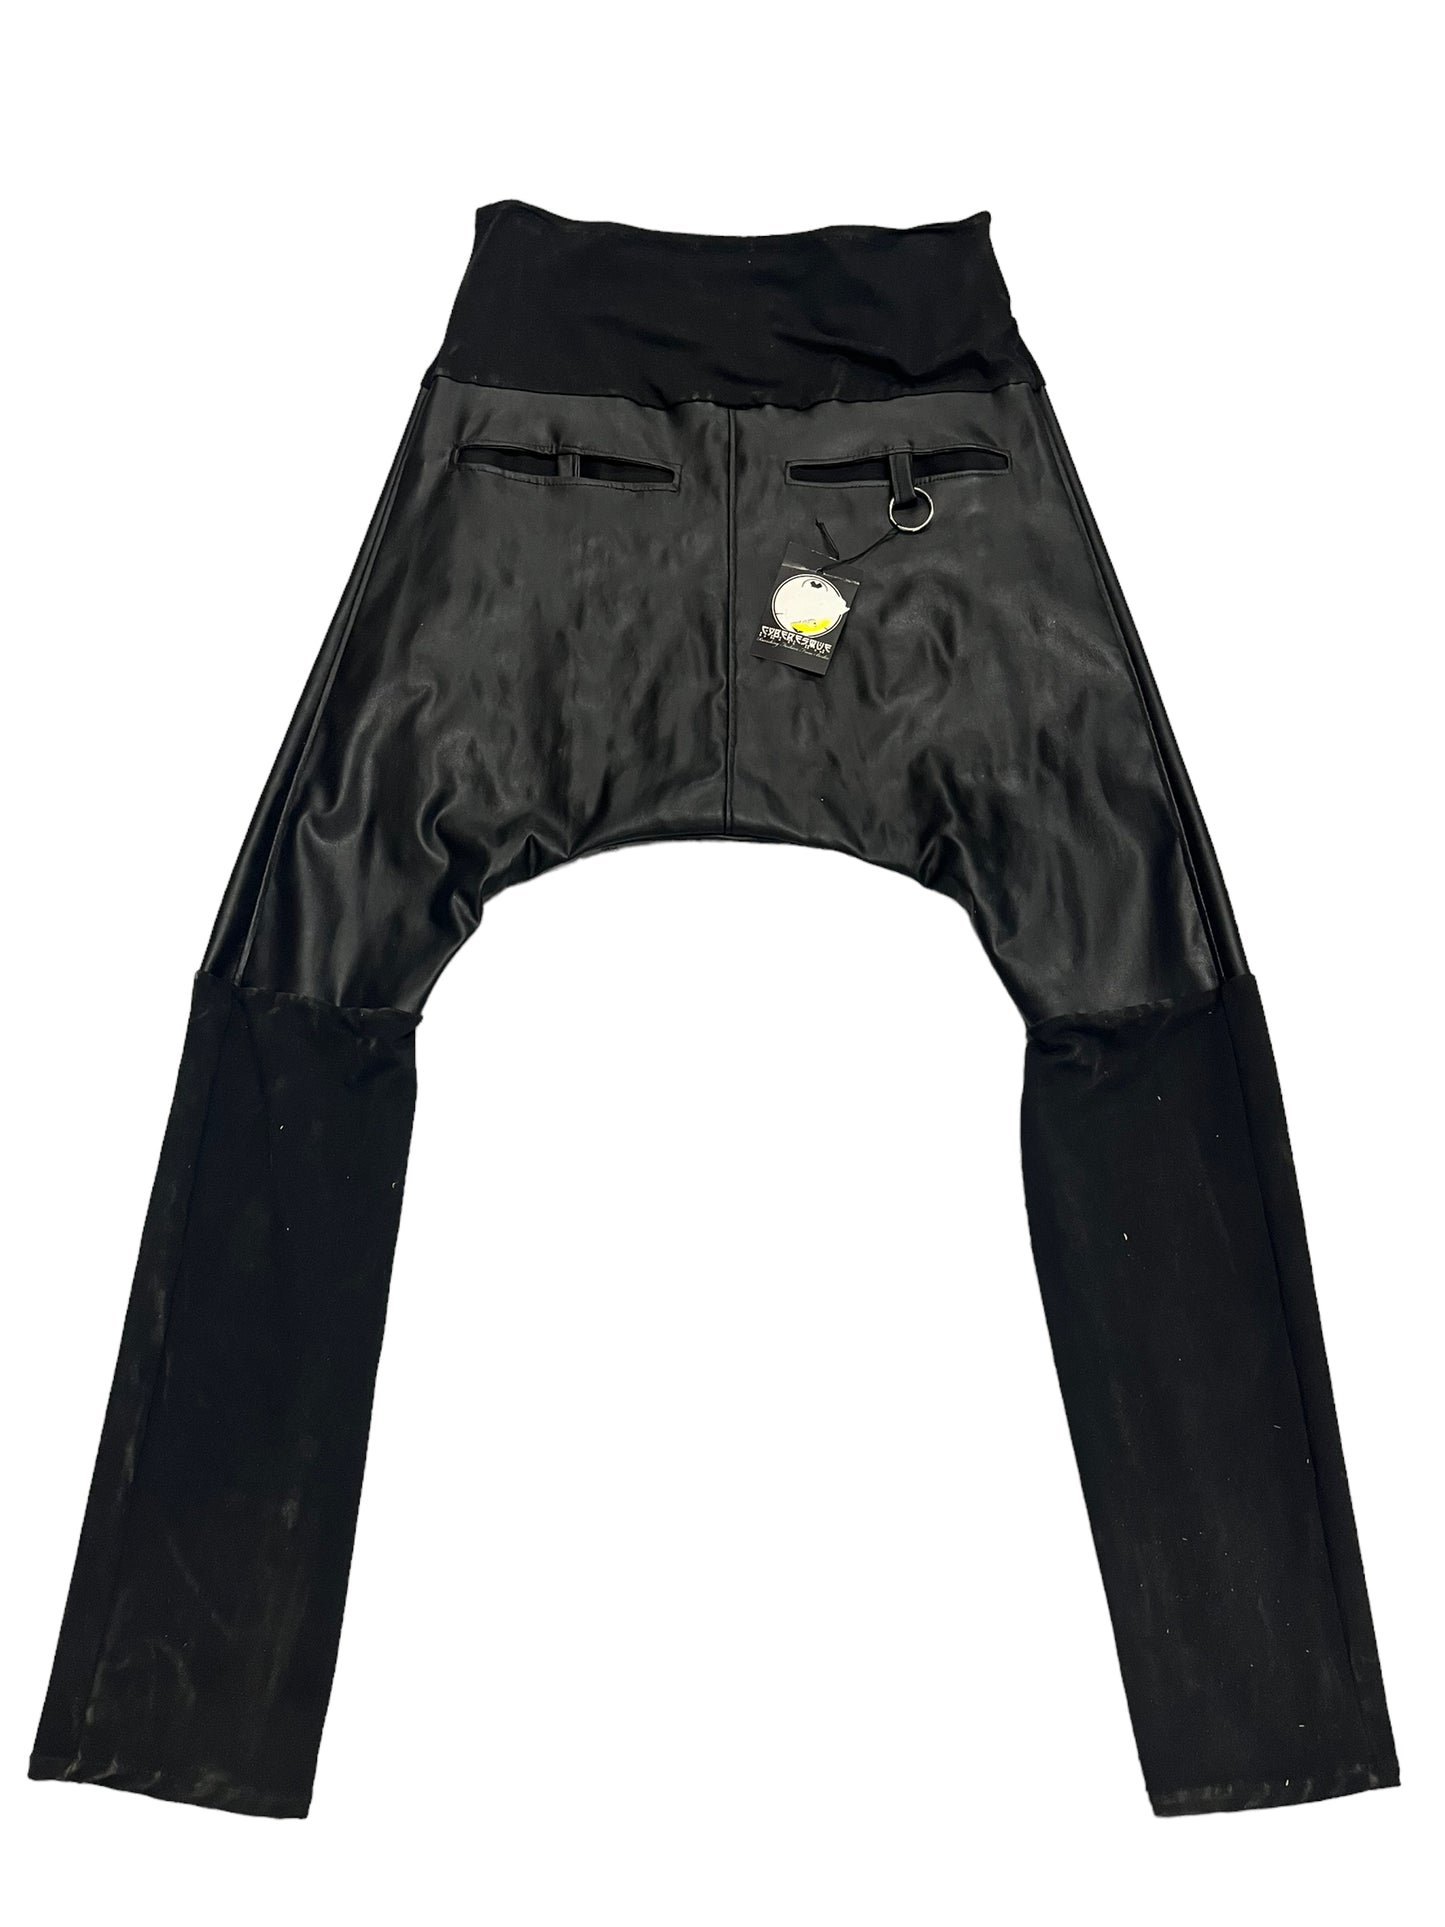 LL83 - Black Maternity Pants - Size XL